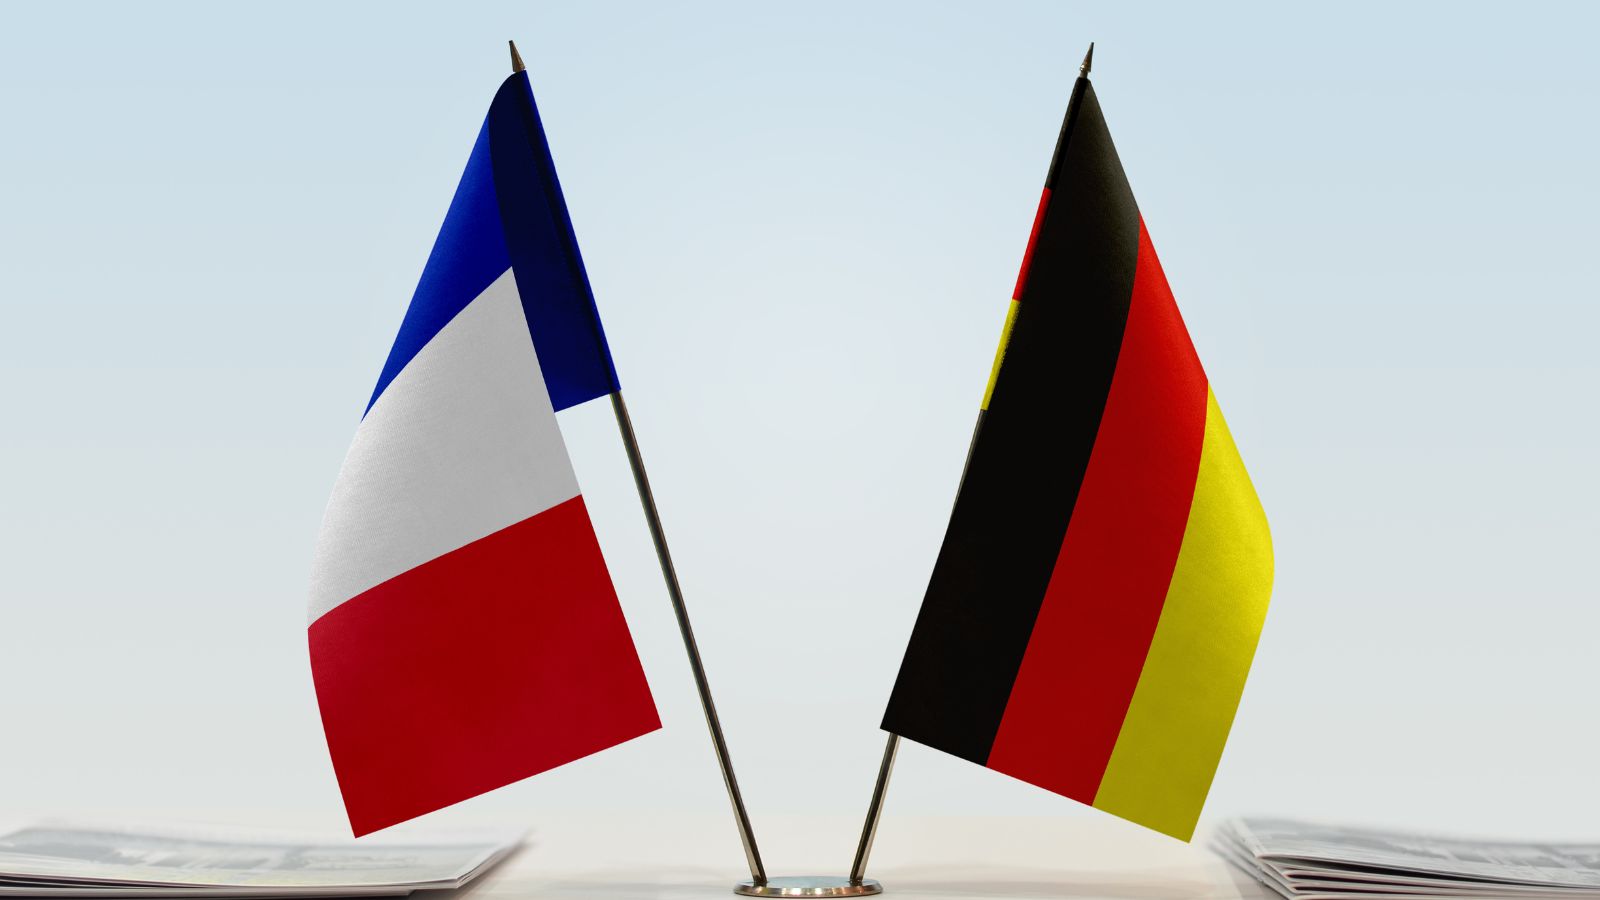 تواجه ألمانيا وفرنسا تحديات في هيمنتهما على أوروبا، وفقًا لصحيفة لوموند